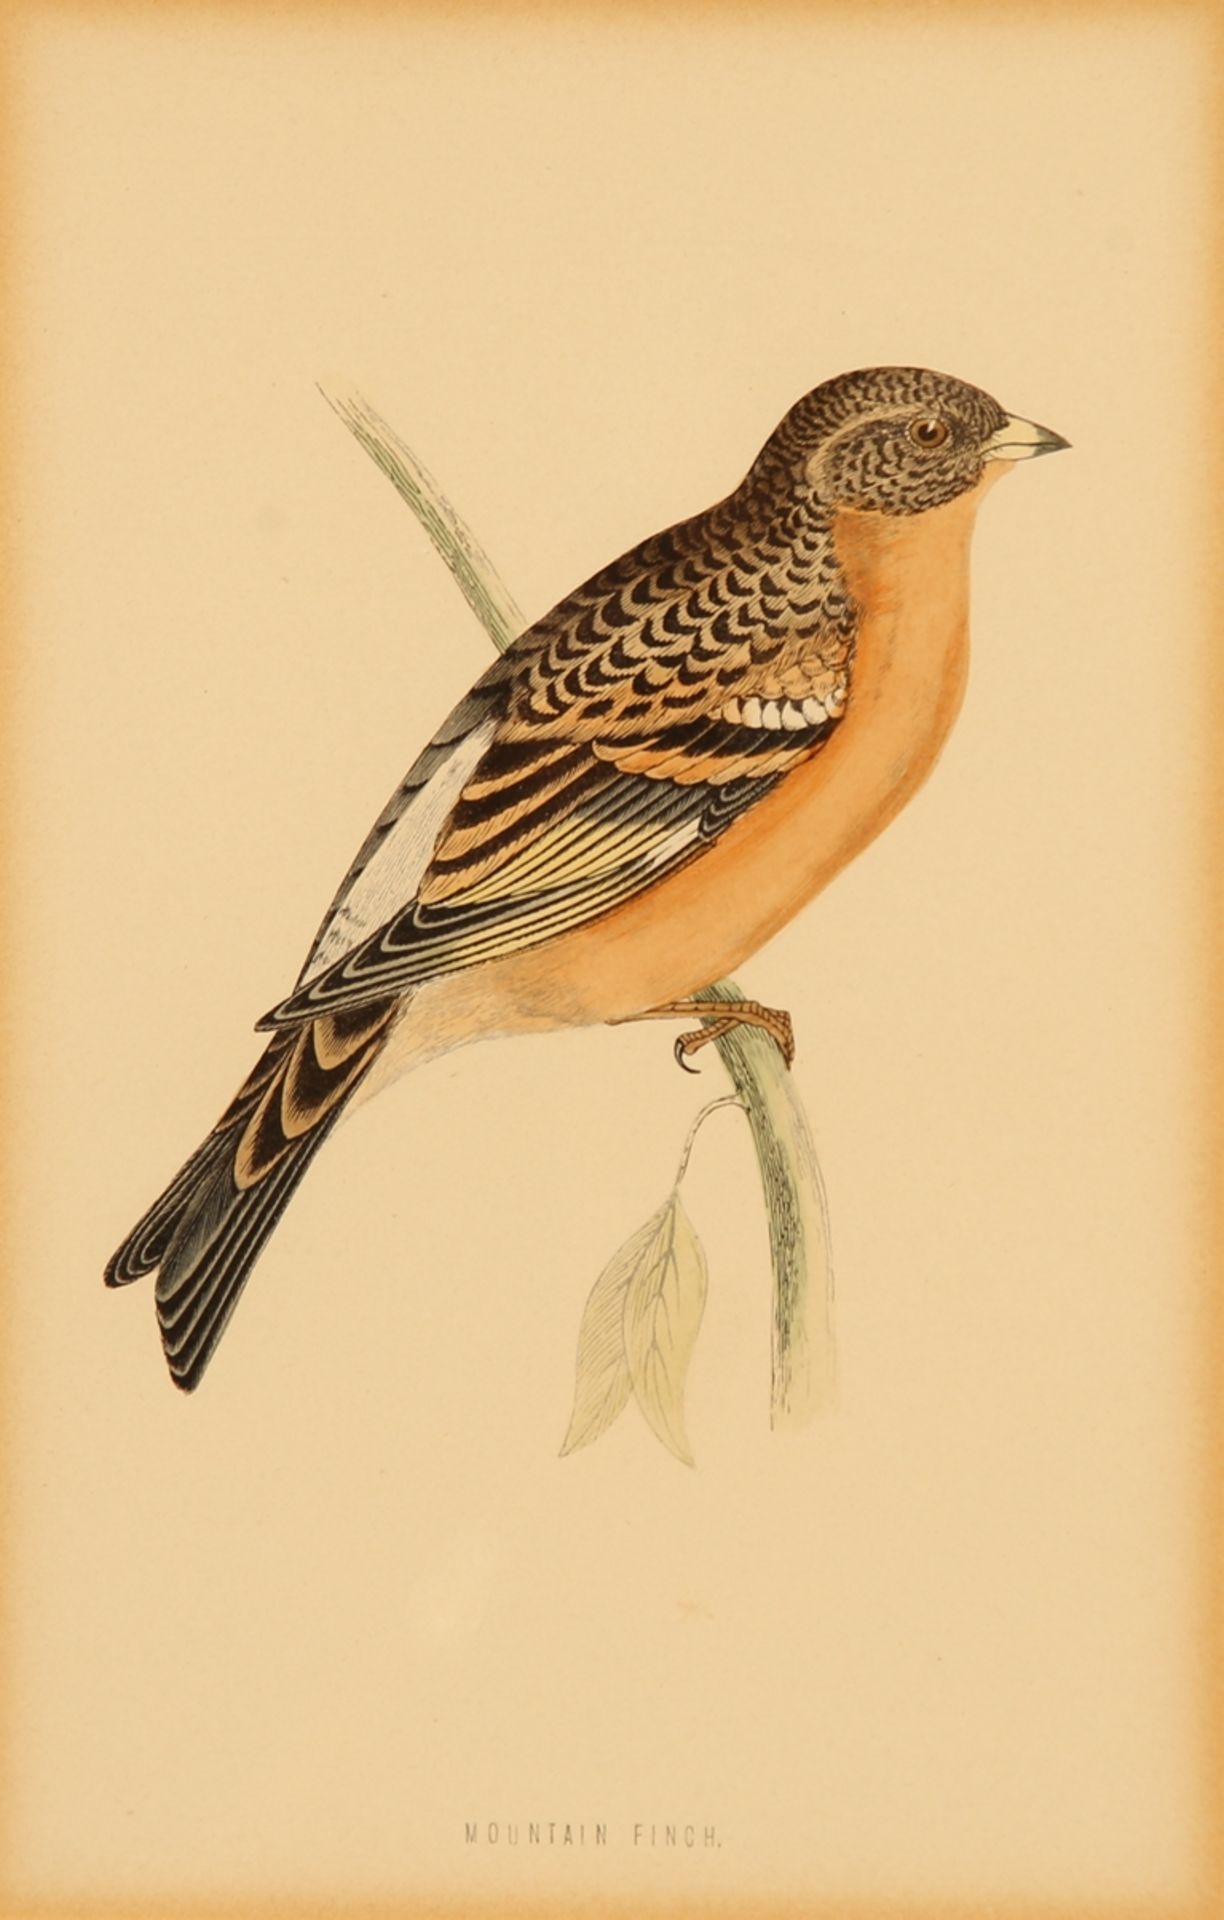 Vögel. 6 Farbholzstiche (in 5 Rahmen) von Harris, London 1870 aus 'A History of British Birds'. Ca. - Image 2 of 5